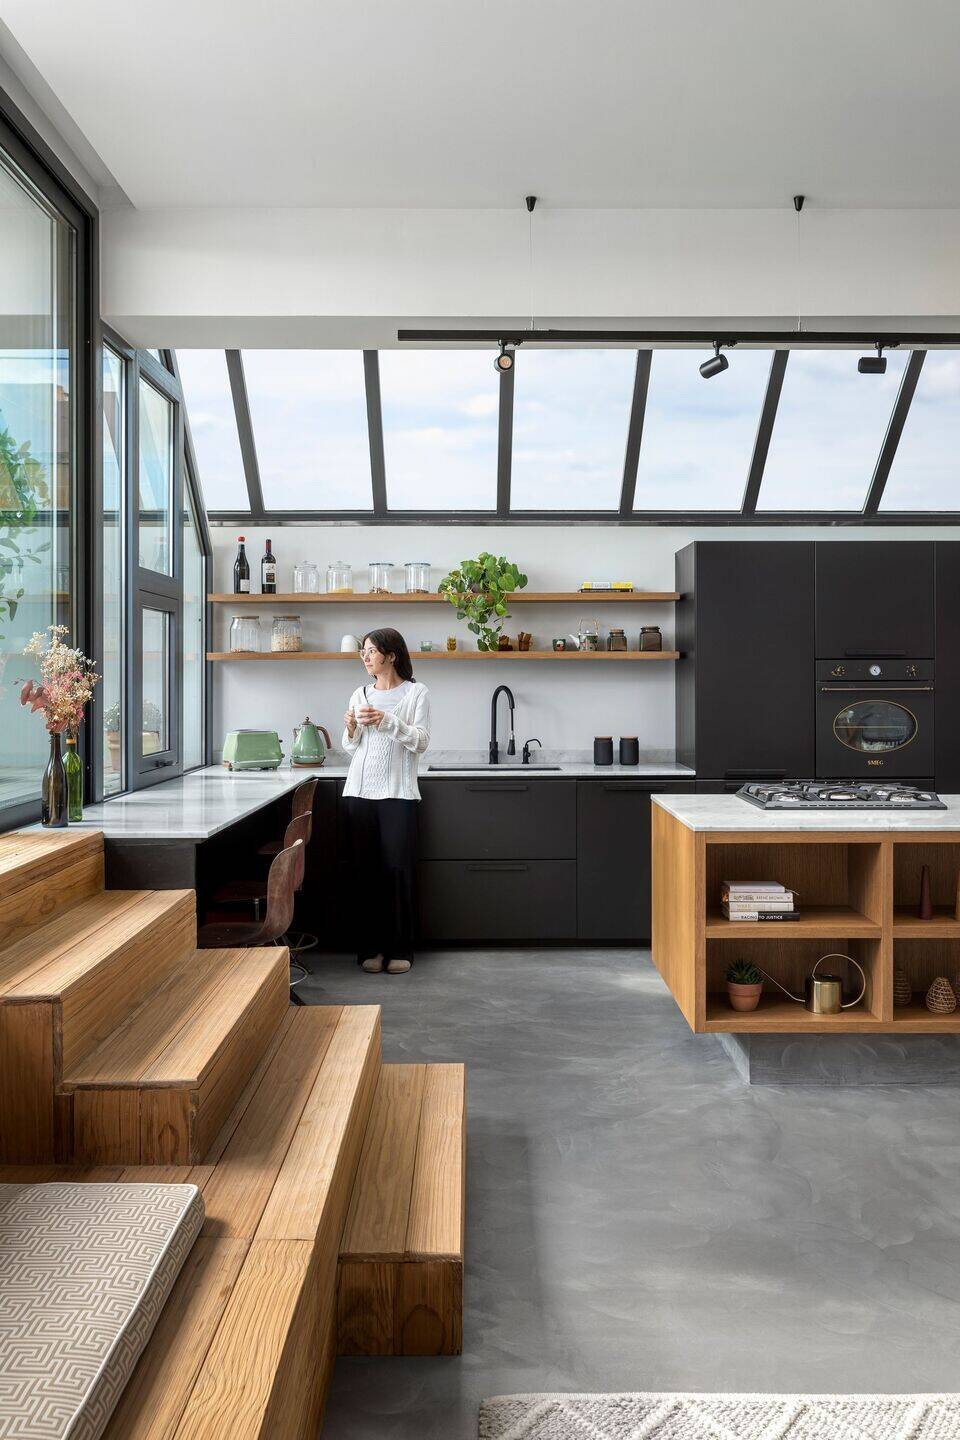 
Căn bếp rộng lớn tăng không gian lưu trữ đồ dùng nhà bếp, hệ cửa sổ trần 45 độ giúp lấy ánh sáng hiệu quả
